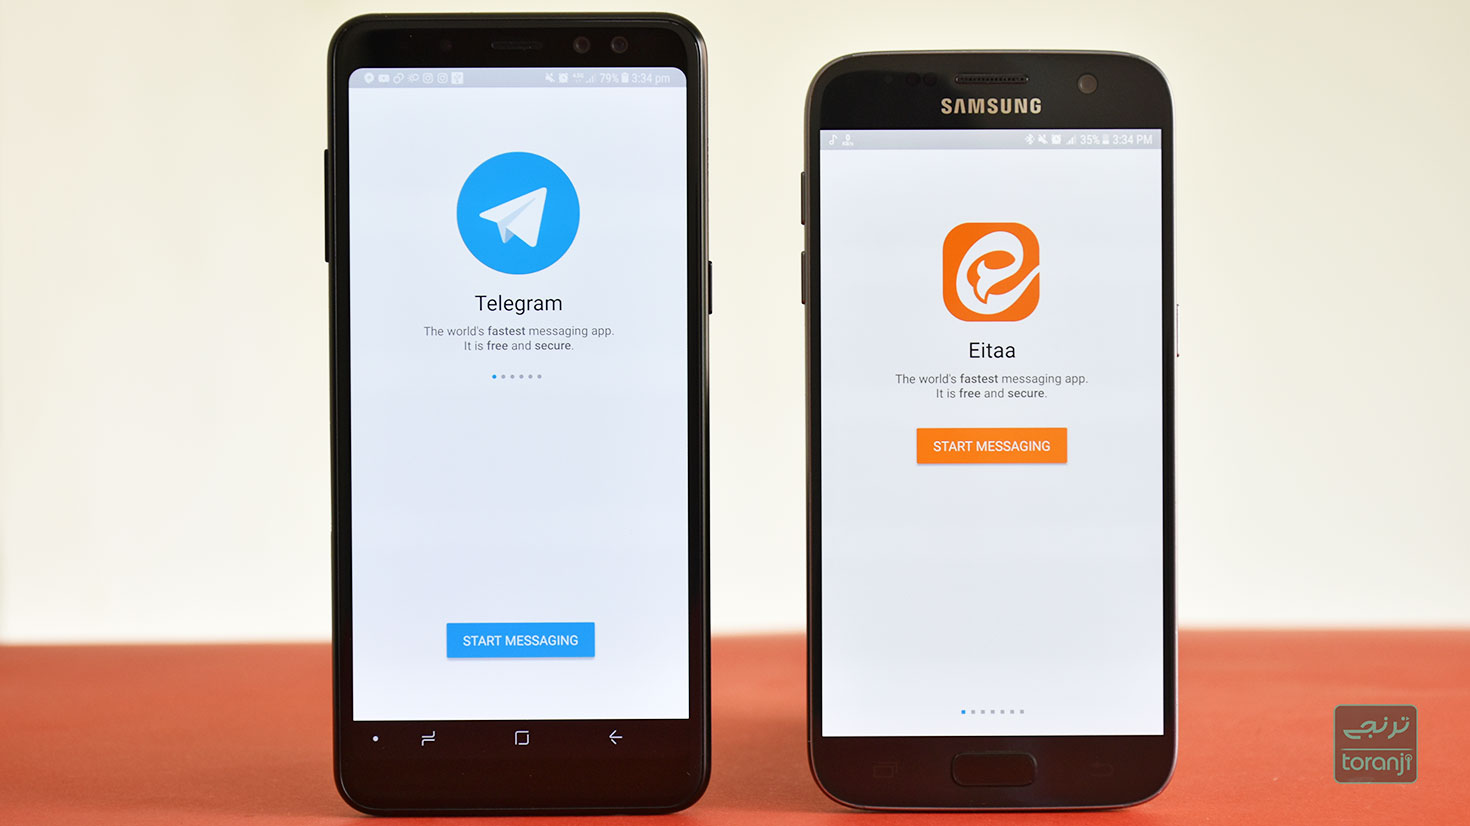 صداوسیما، جایگزین تلگرام را معرفی کرد/از پیام رسان داخلی استفاده میکنید؟؟